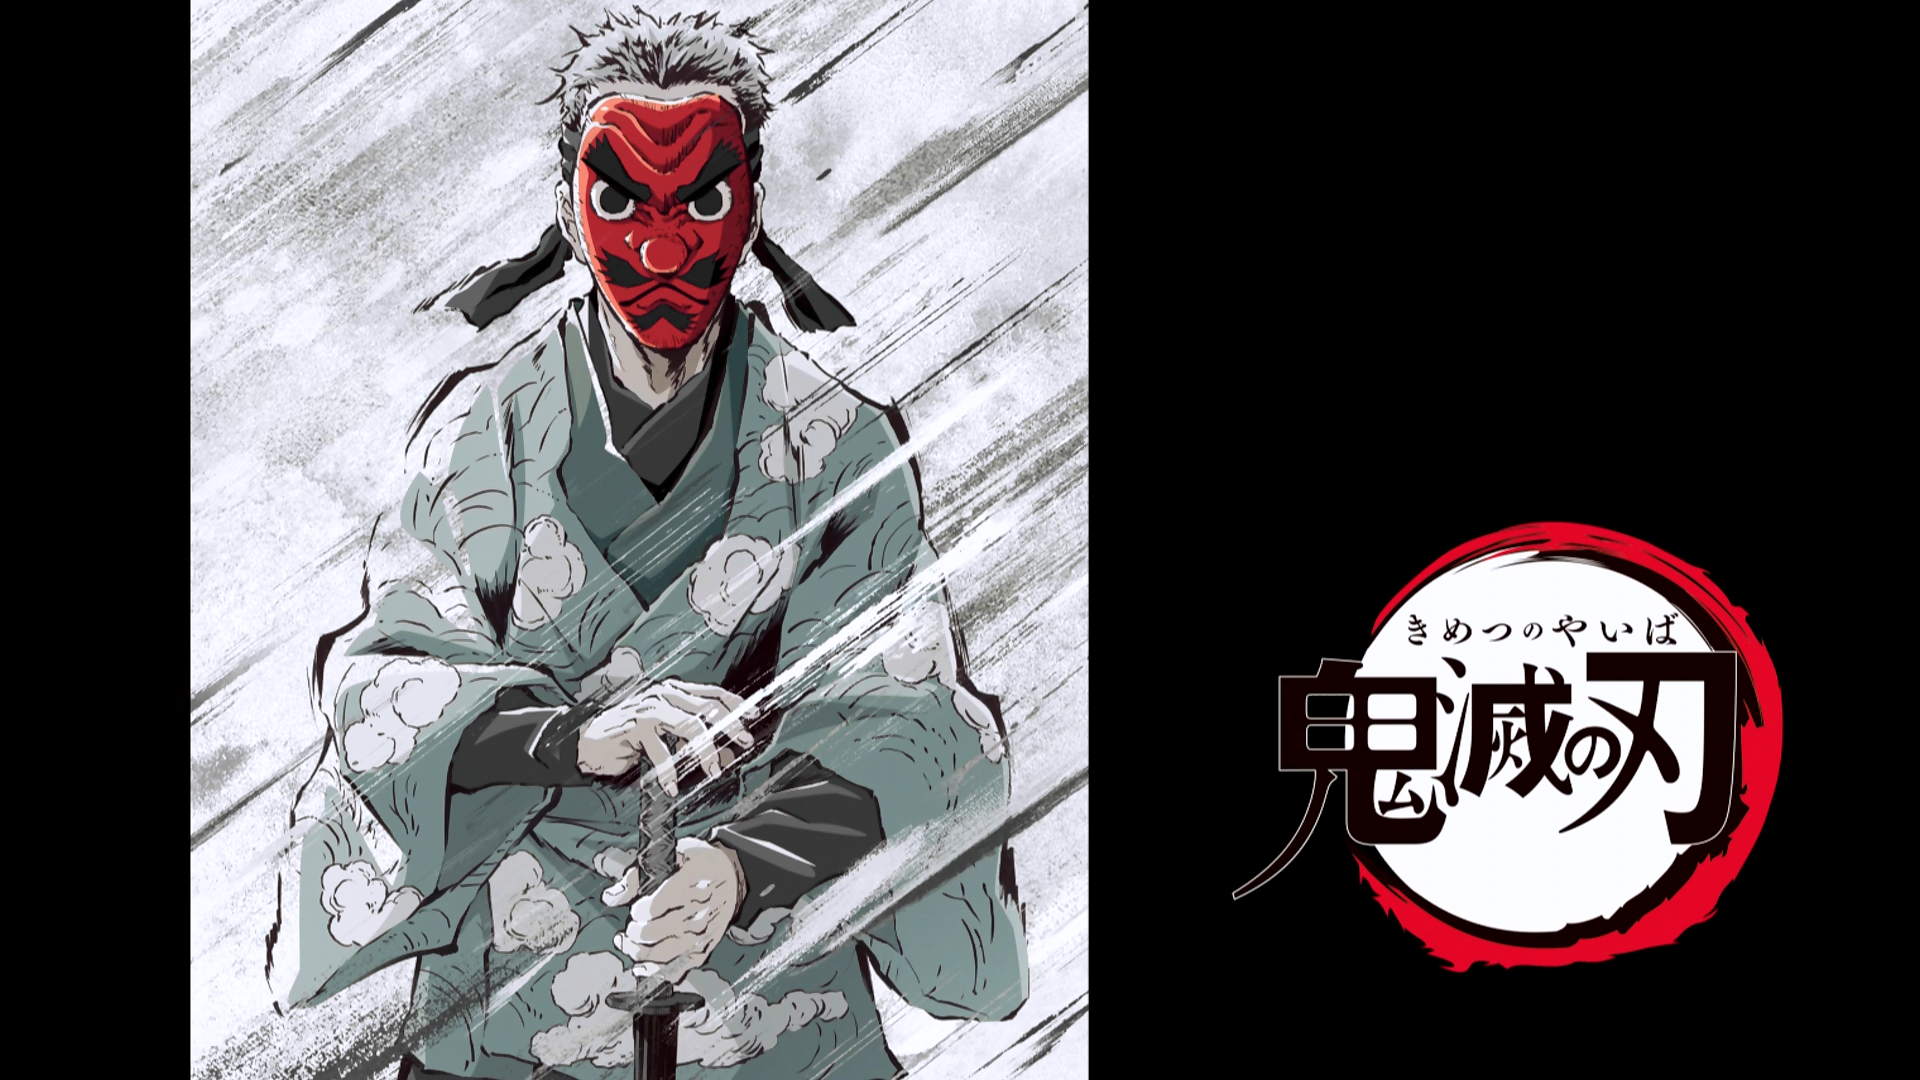 Anime Journal - Demon Slayer: Kimetsu no Yaiba, Episode 4